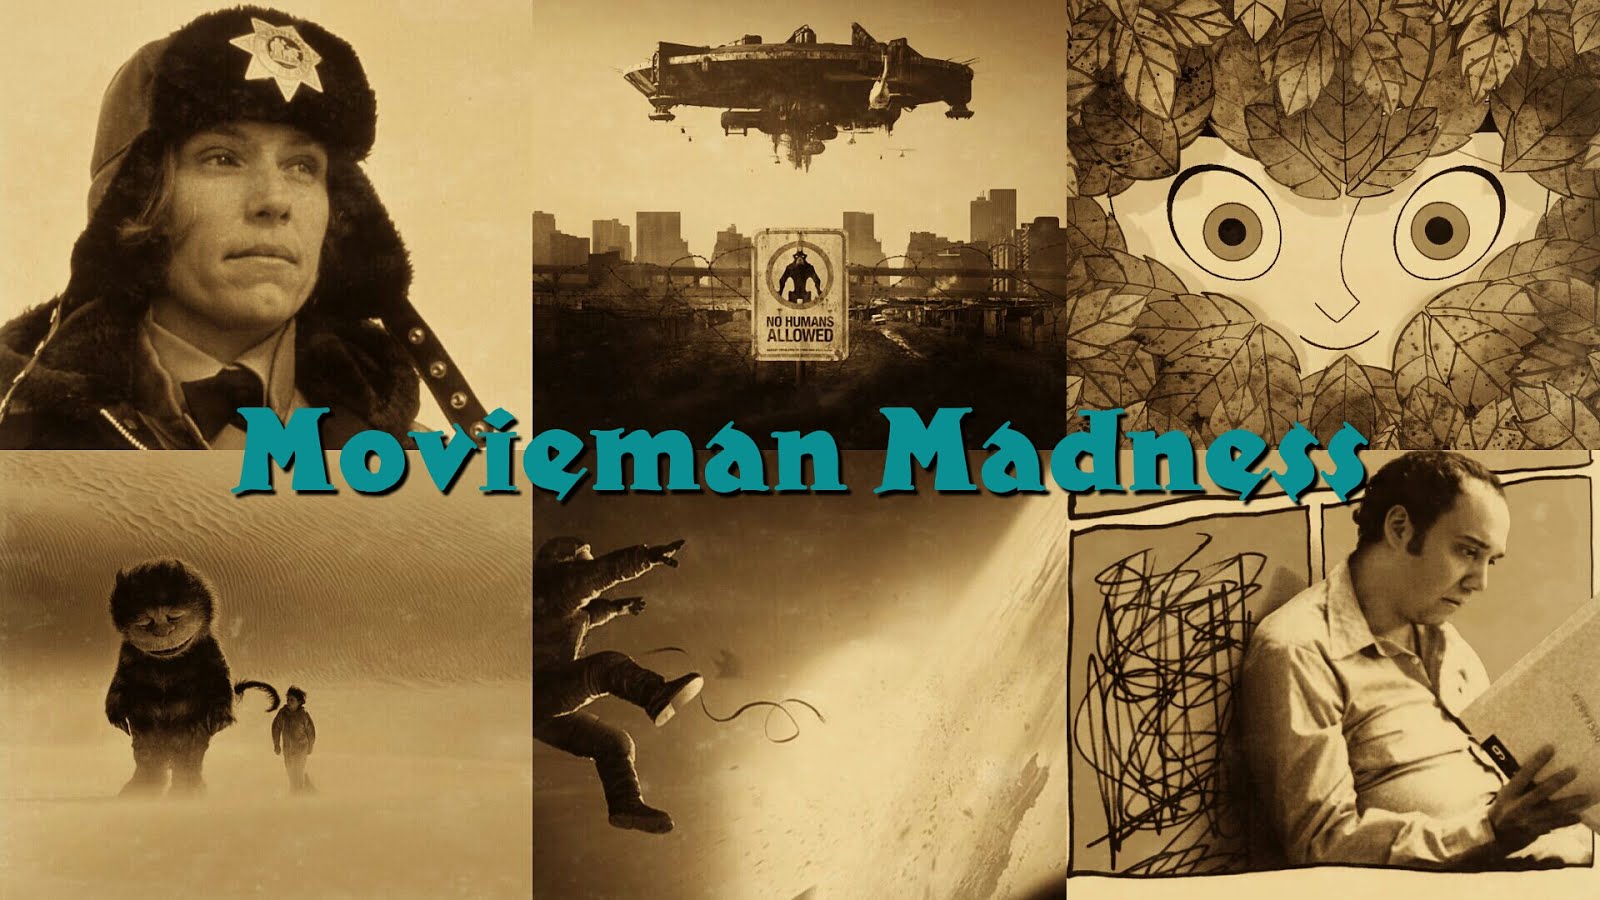 Movieman Madness